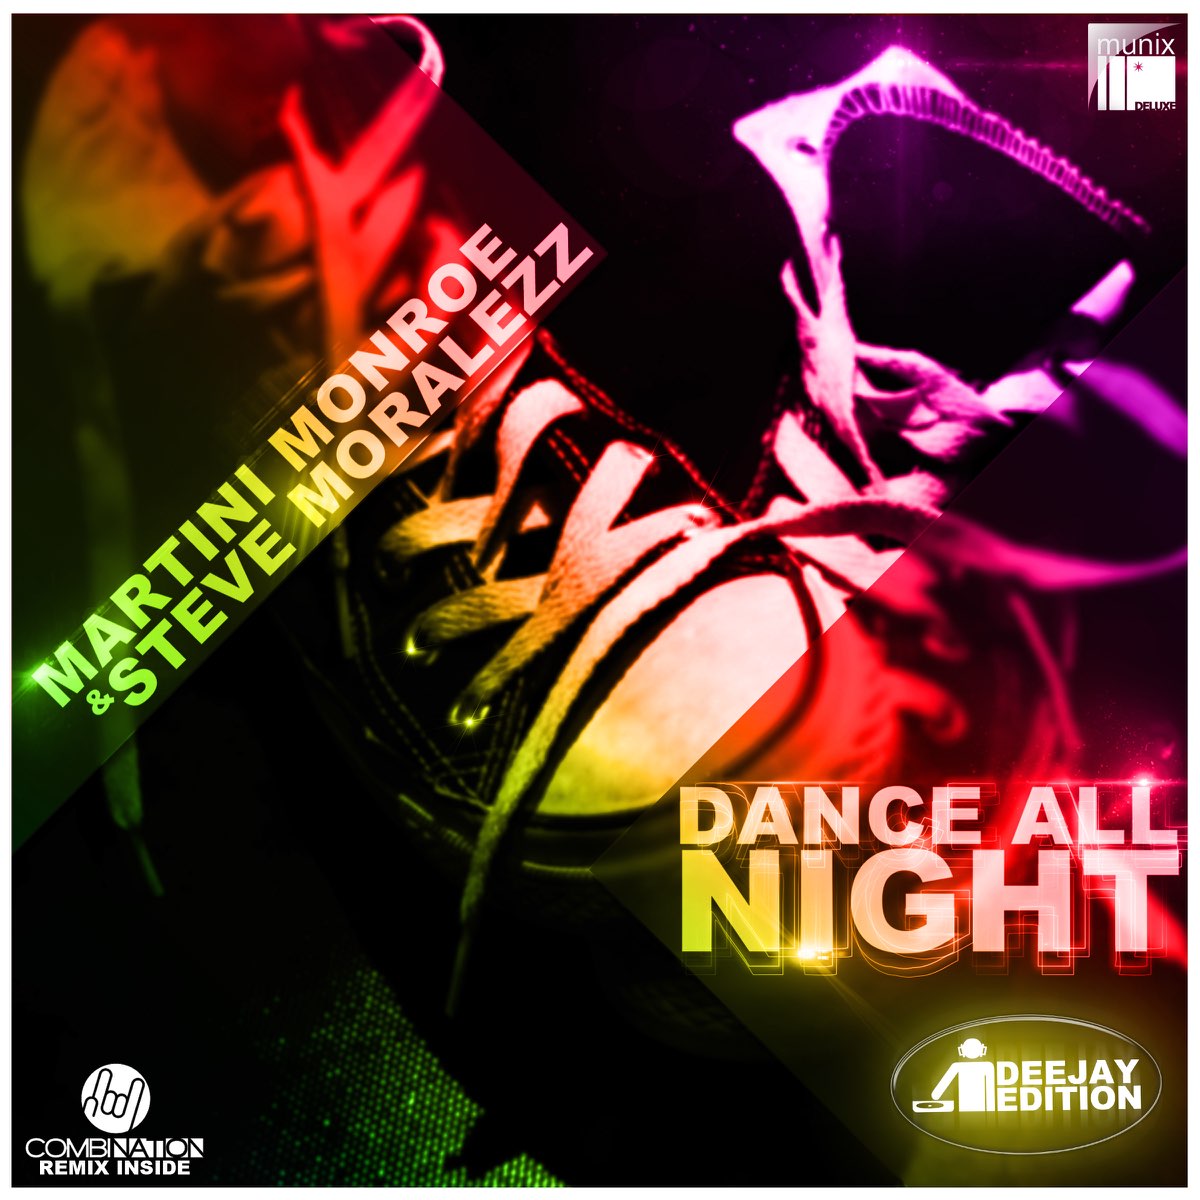 New dance remix. Dance альбомы. Dance all Night. Dancin ремикс медленный. Песня в танце ремикс.